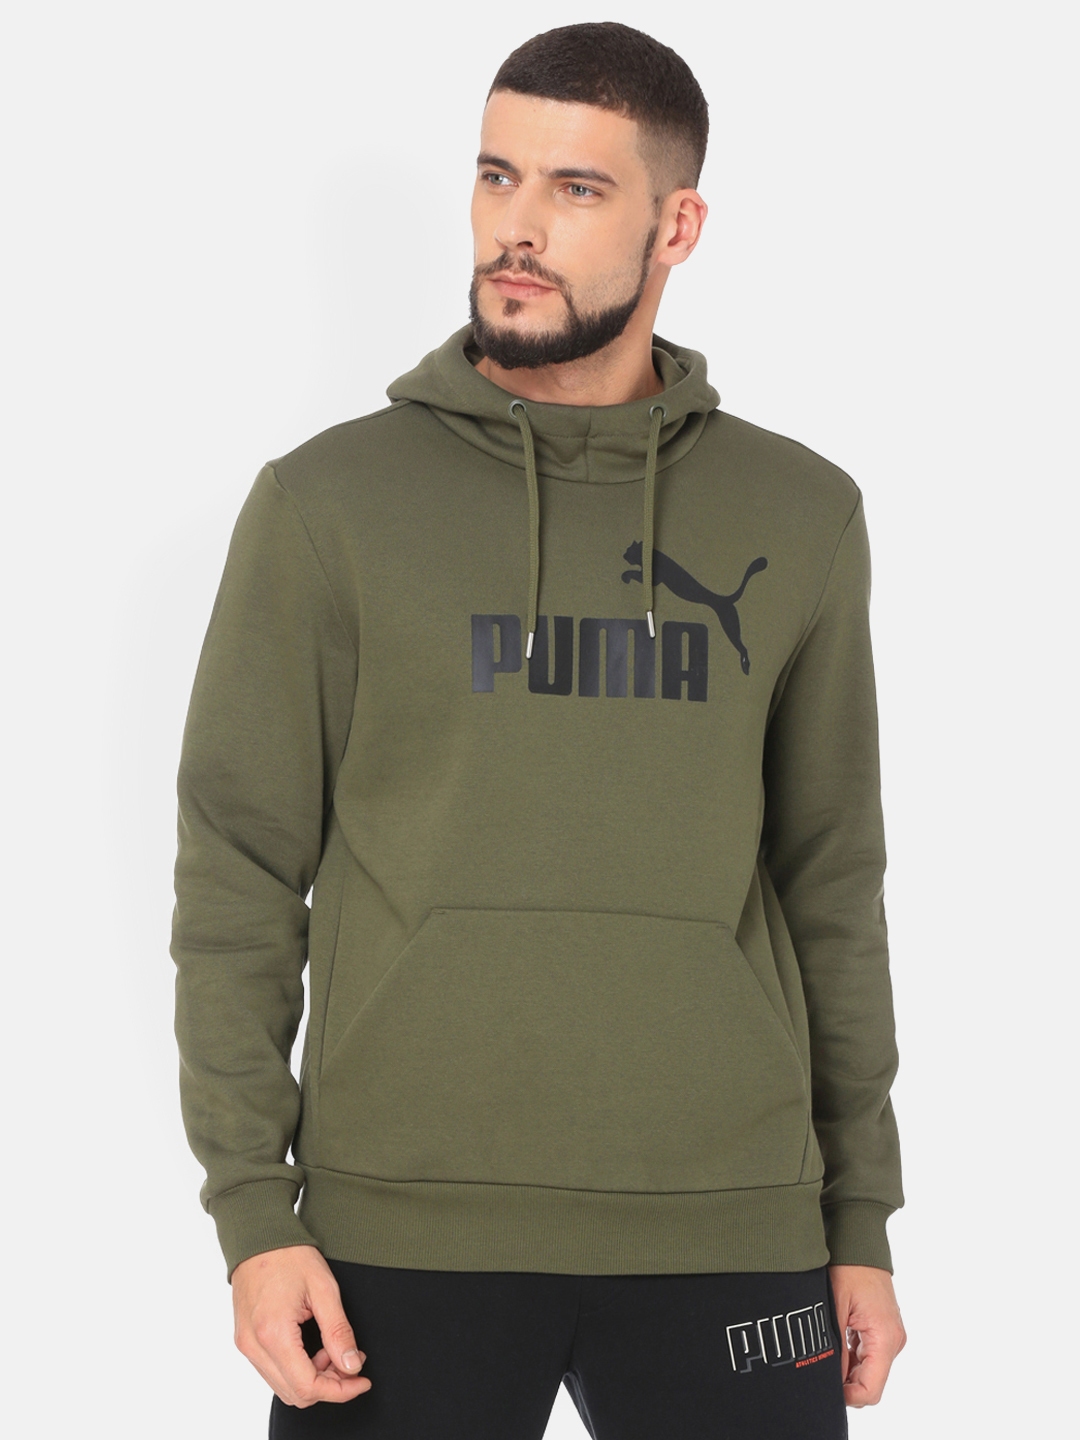 puma olive green hoodie